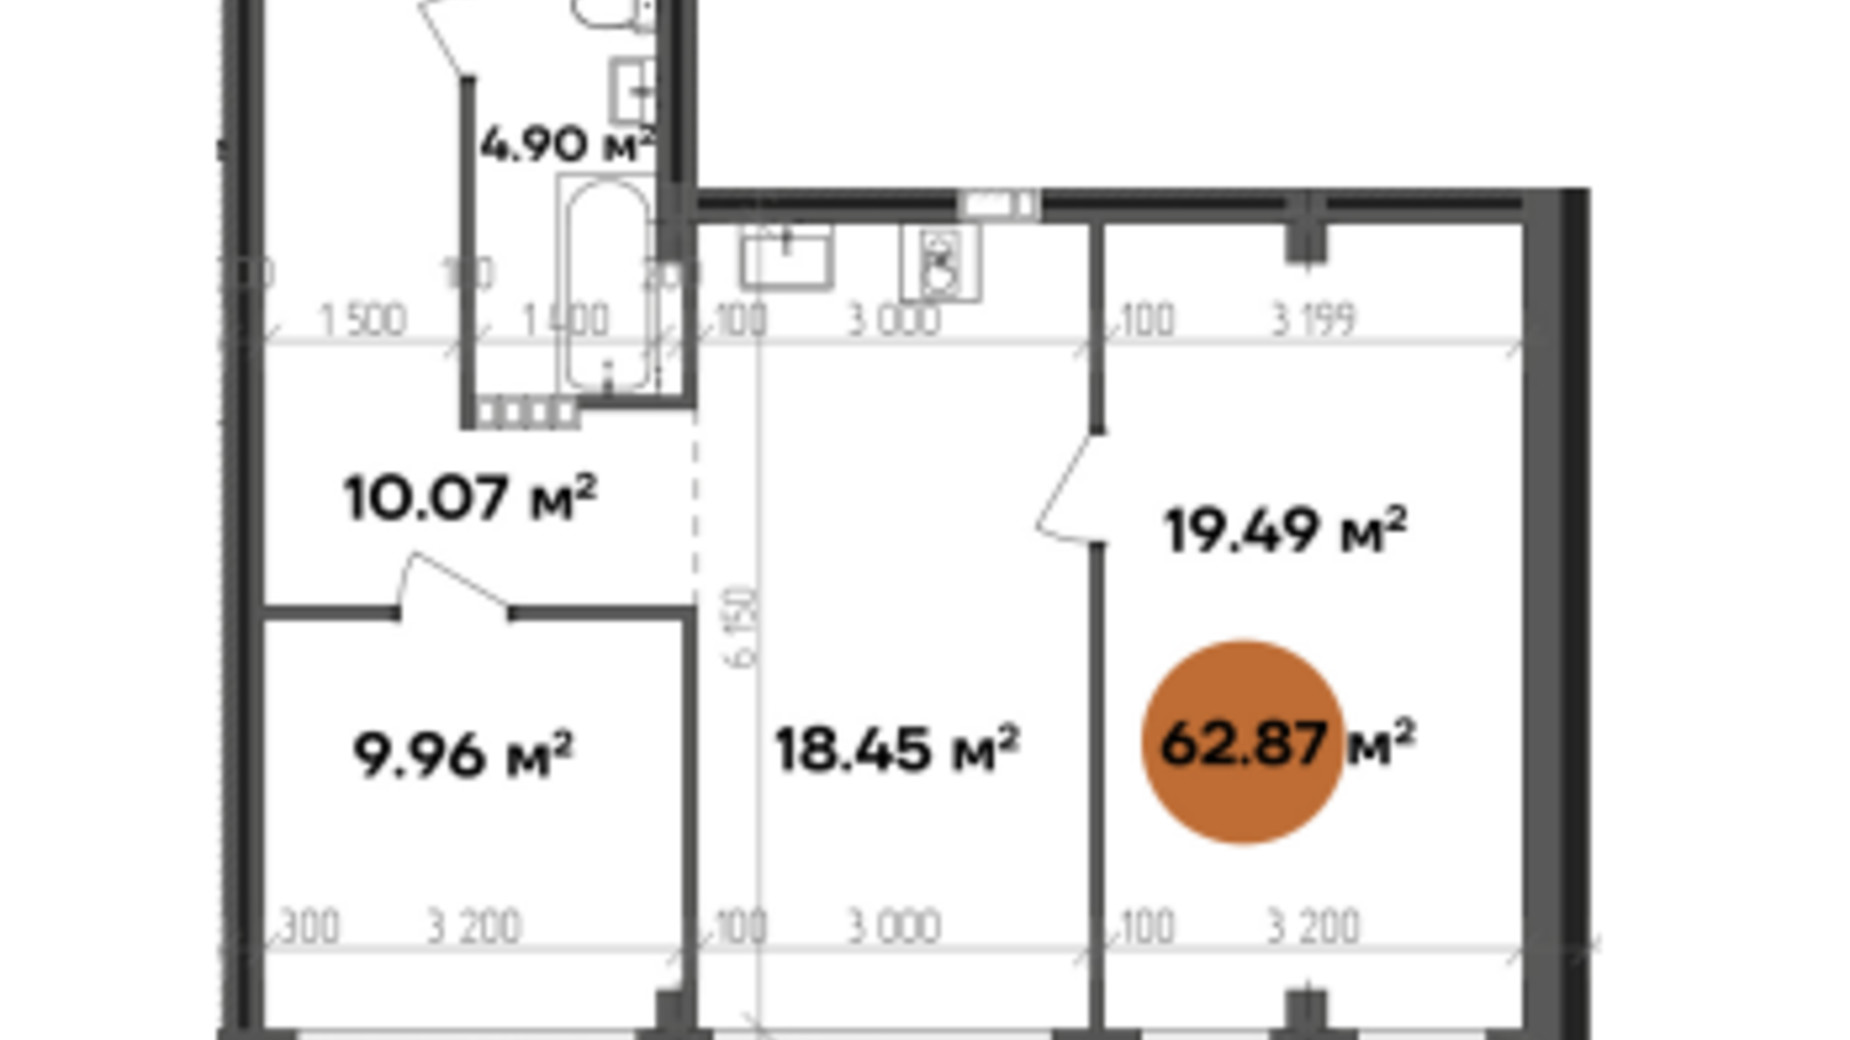 Планировка апартаментов в МФК Shevchenka 62.87 м², фото 607261